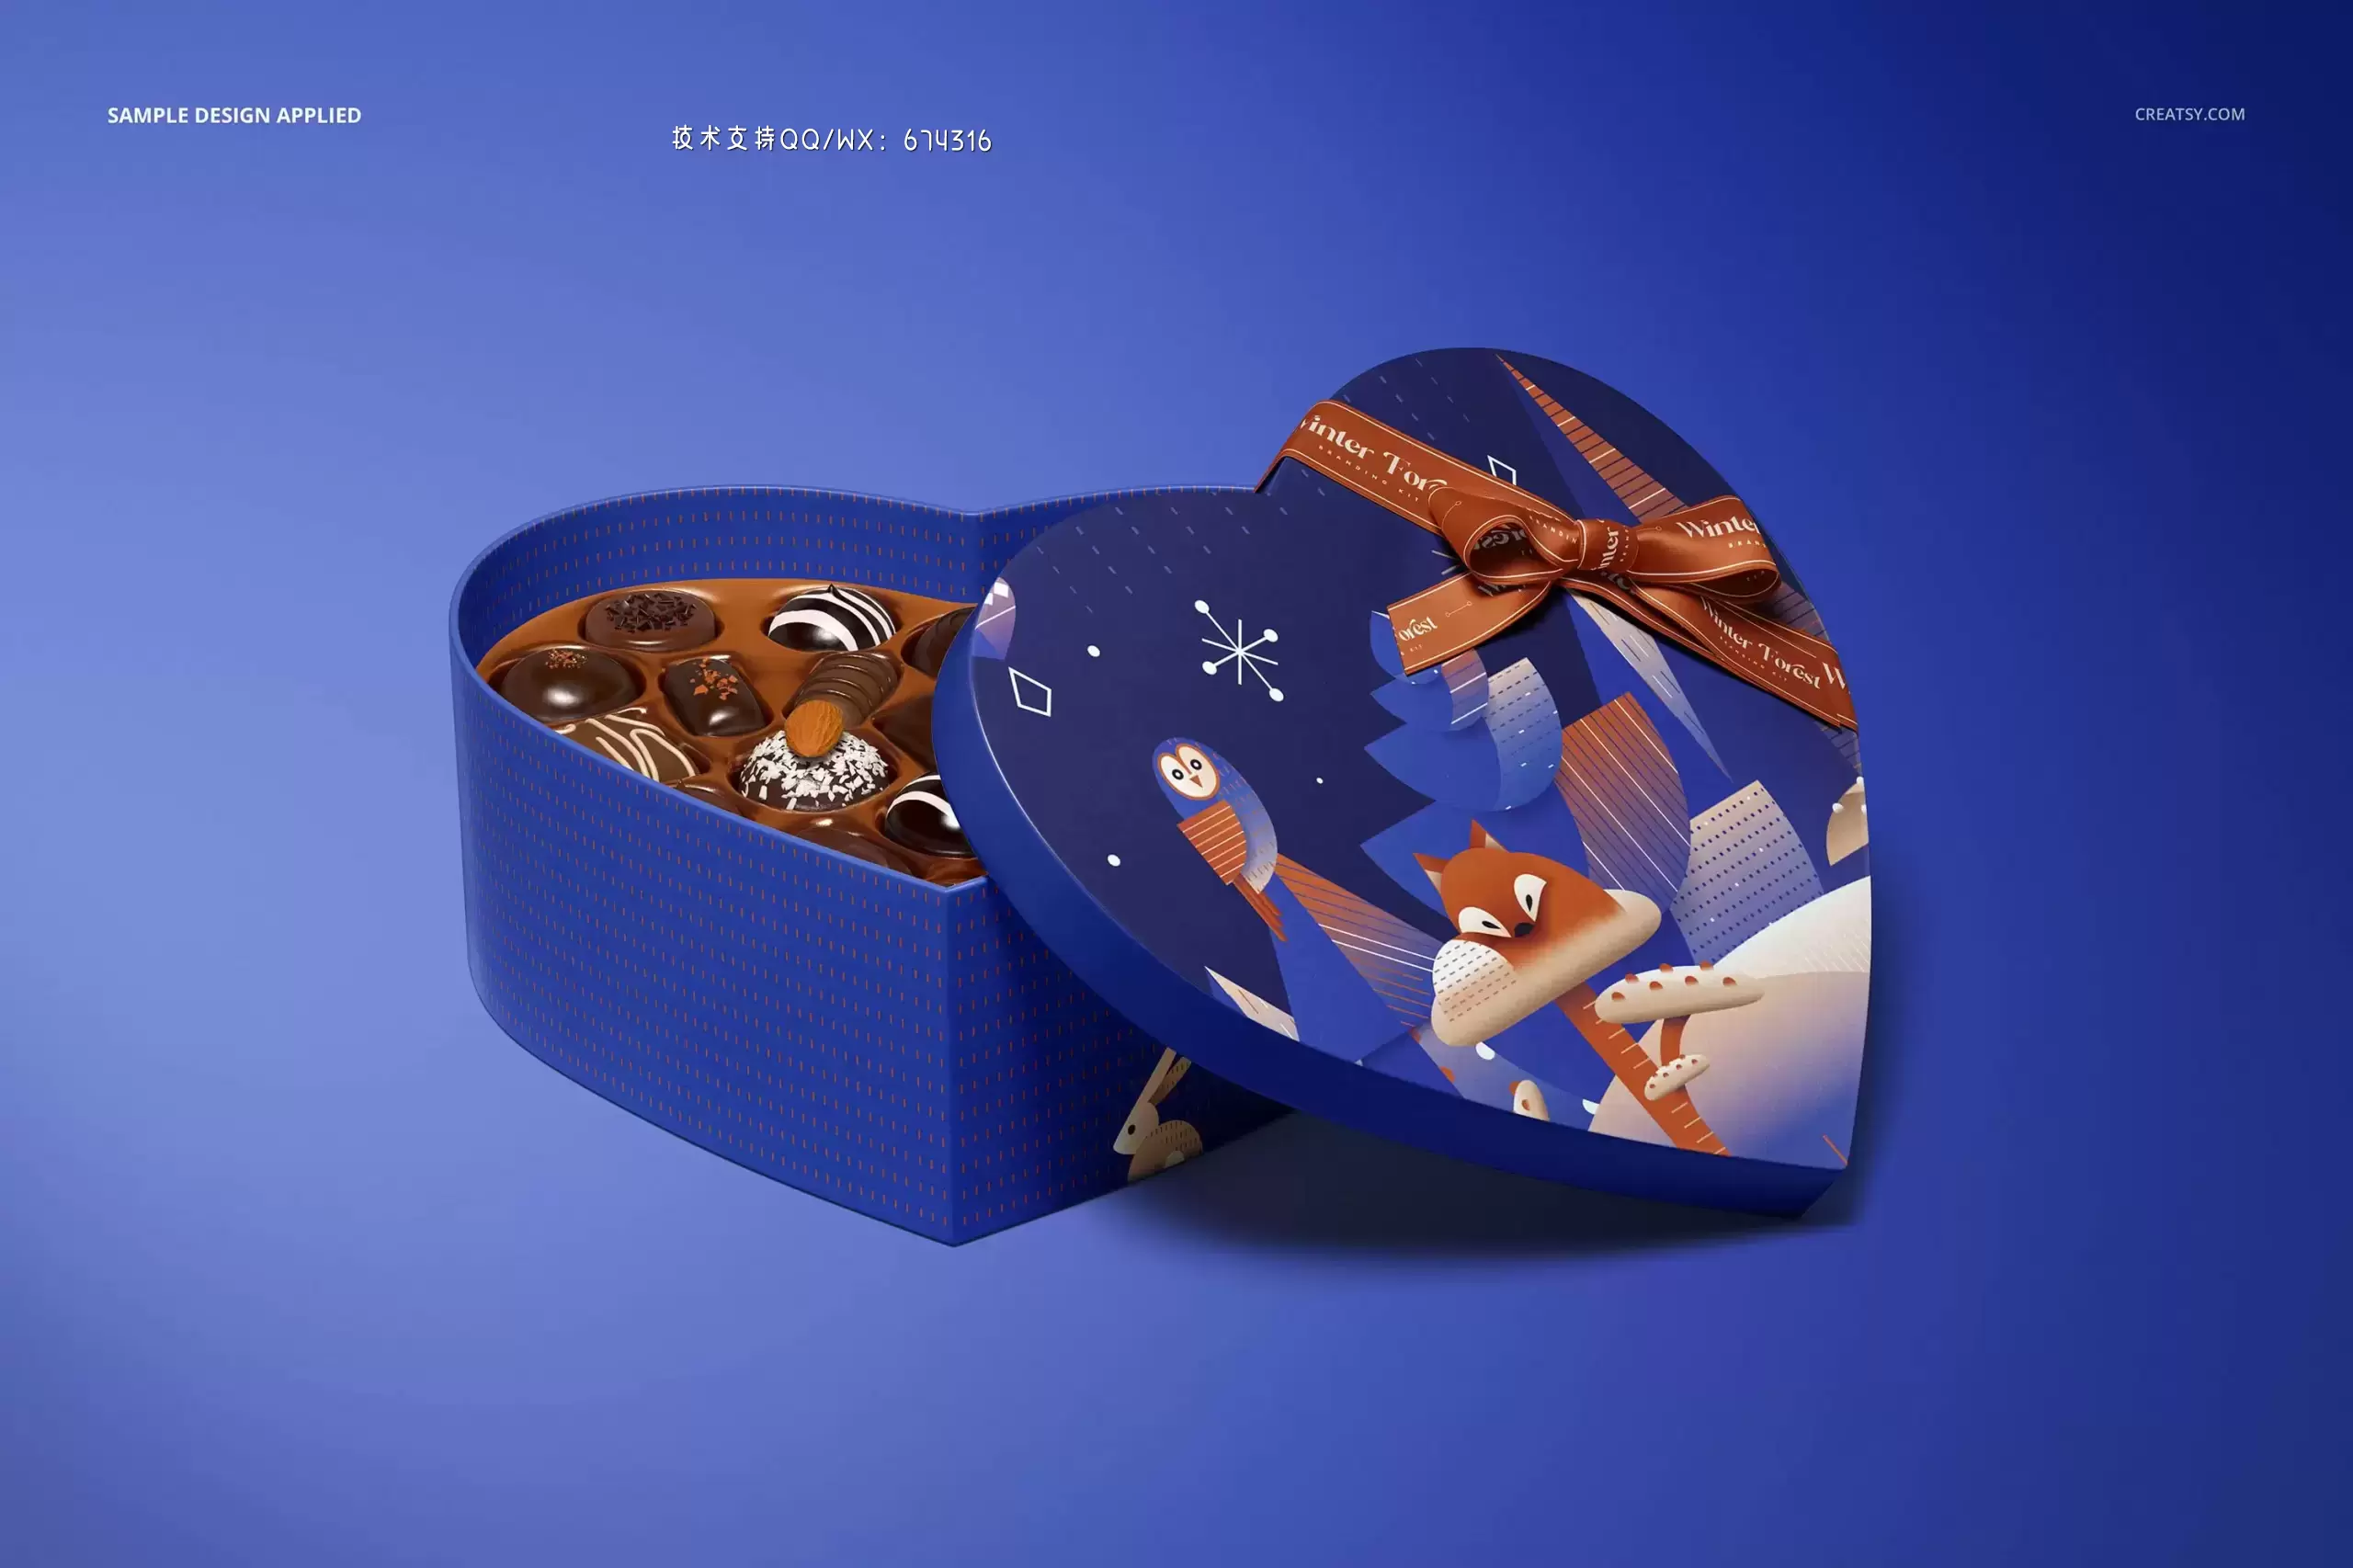 心形巧克力盒包装设计样机[3.75GB,PSD]免费下载插图5